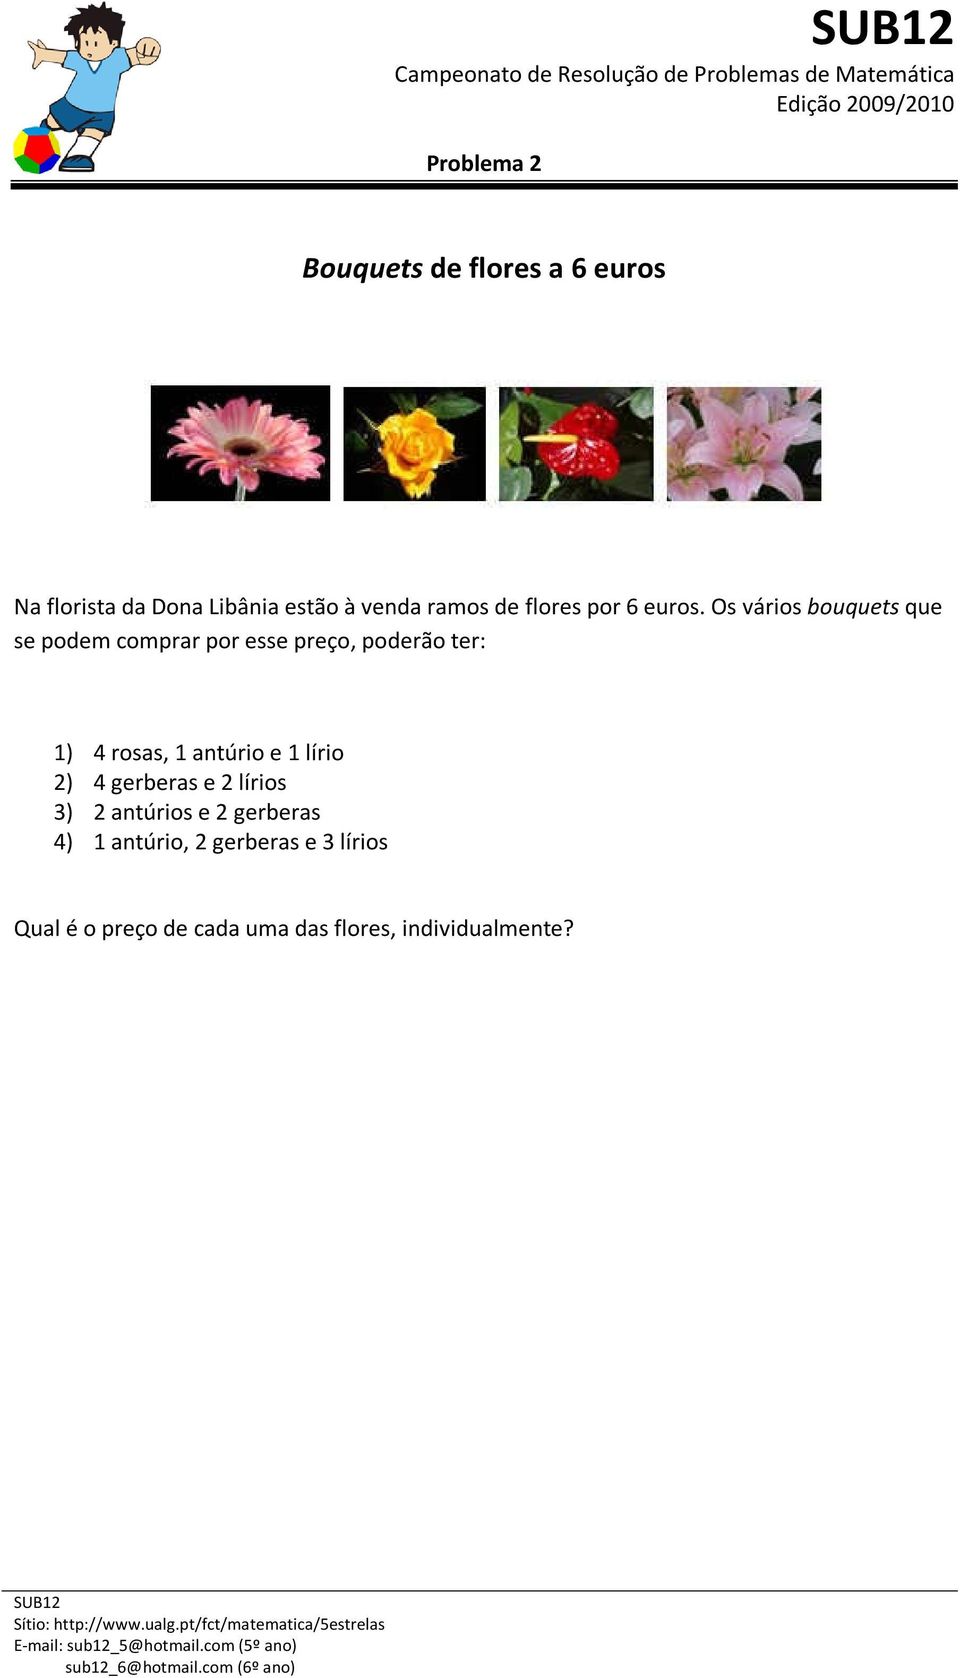 Os vários bouquets que se podem comprar por esse preço, poderão ter: 1) 4 rosas, 1 antúrio e 1 lírio 2) 4 gerberas e 2 lírios 3) 2